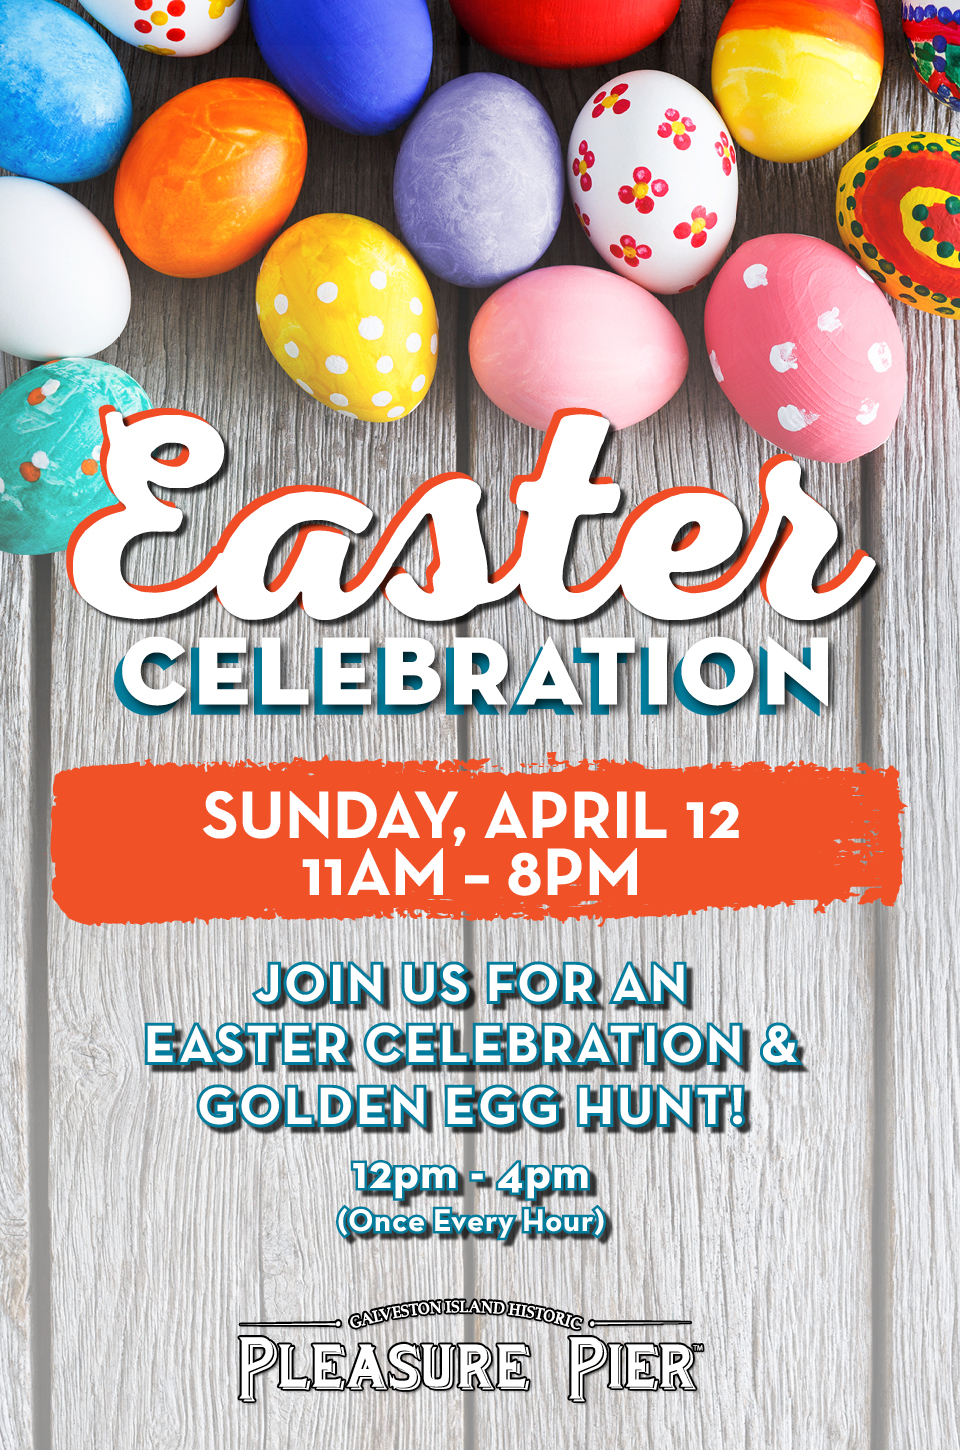 Easter Celebration Sunday April 12th. Join us for an easter celebration and golden egg hunt!